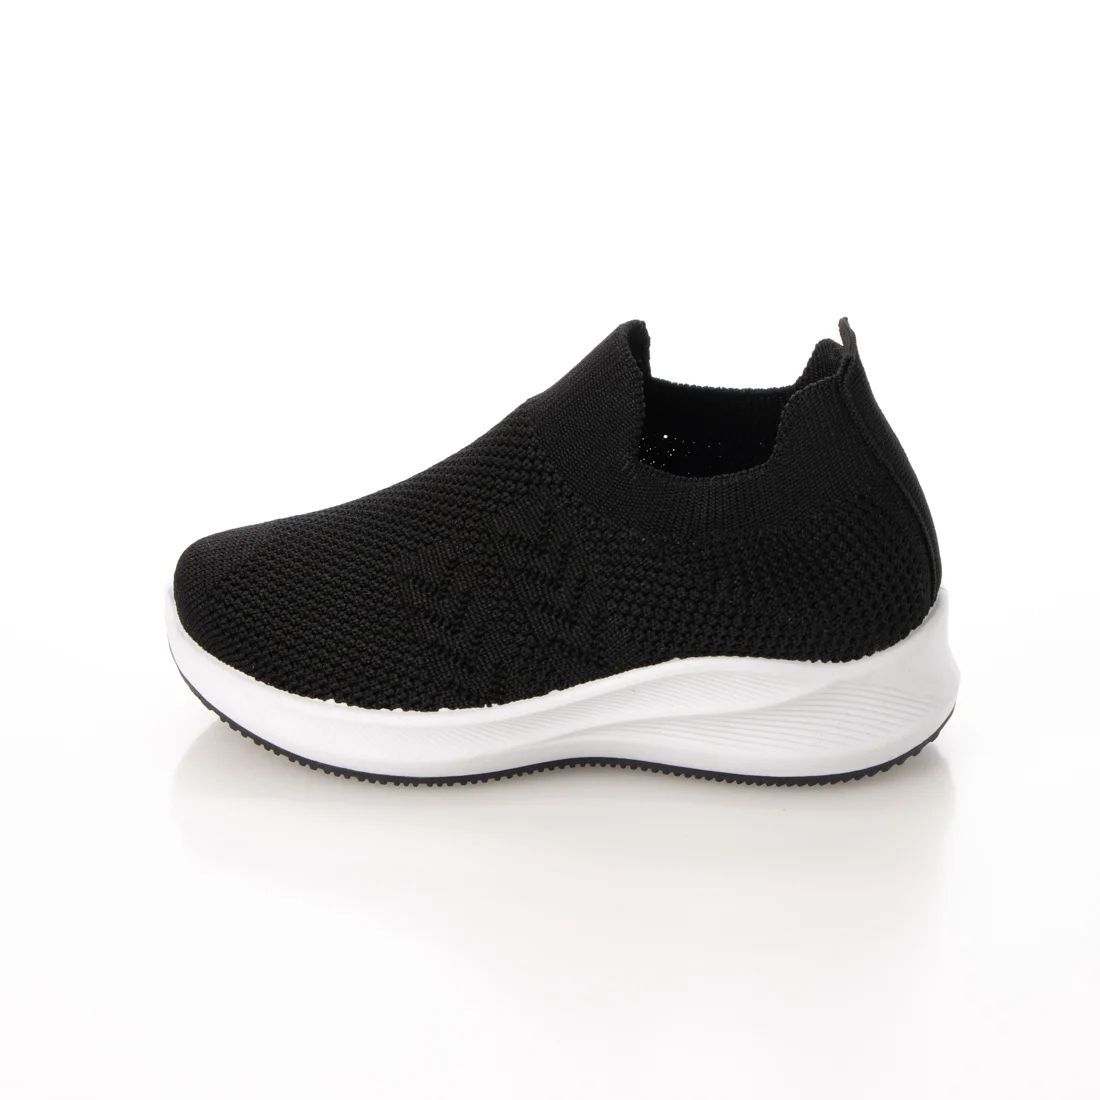 [ новый товар не использовался ]22918 Kids вязаный спортивные туфли черный 21.0cm чёрный 